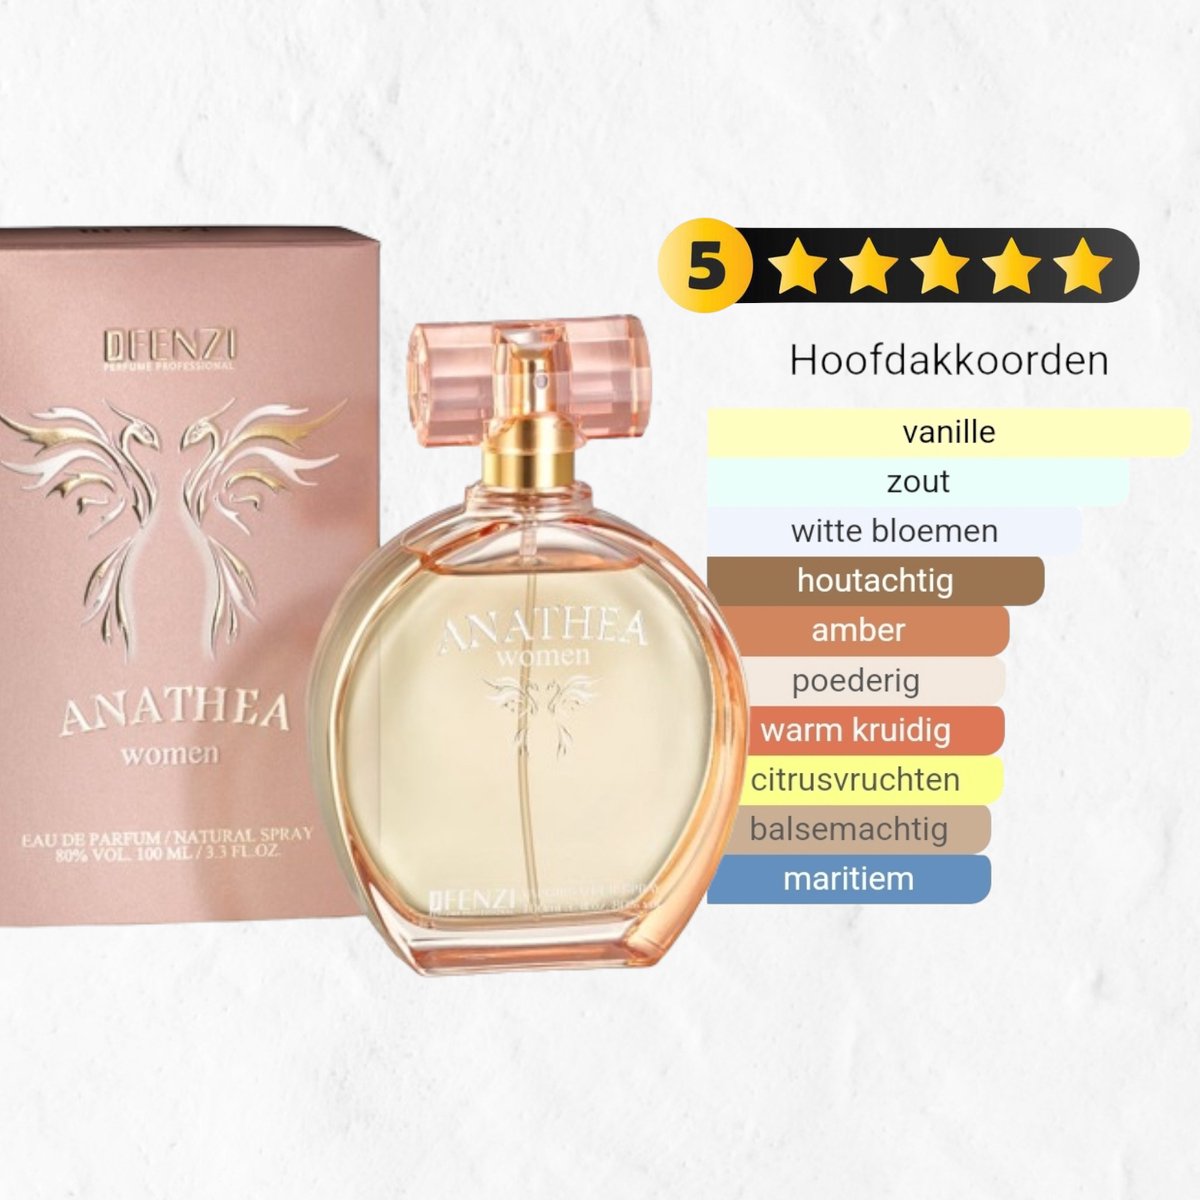 Merk geuren voor een eerlijke prijs - JFenzi - Anathea - Eau de parfum 100ml - 80% ✮✮✮✮✮ Bedankje juf